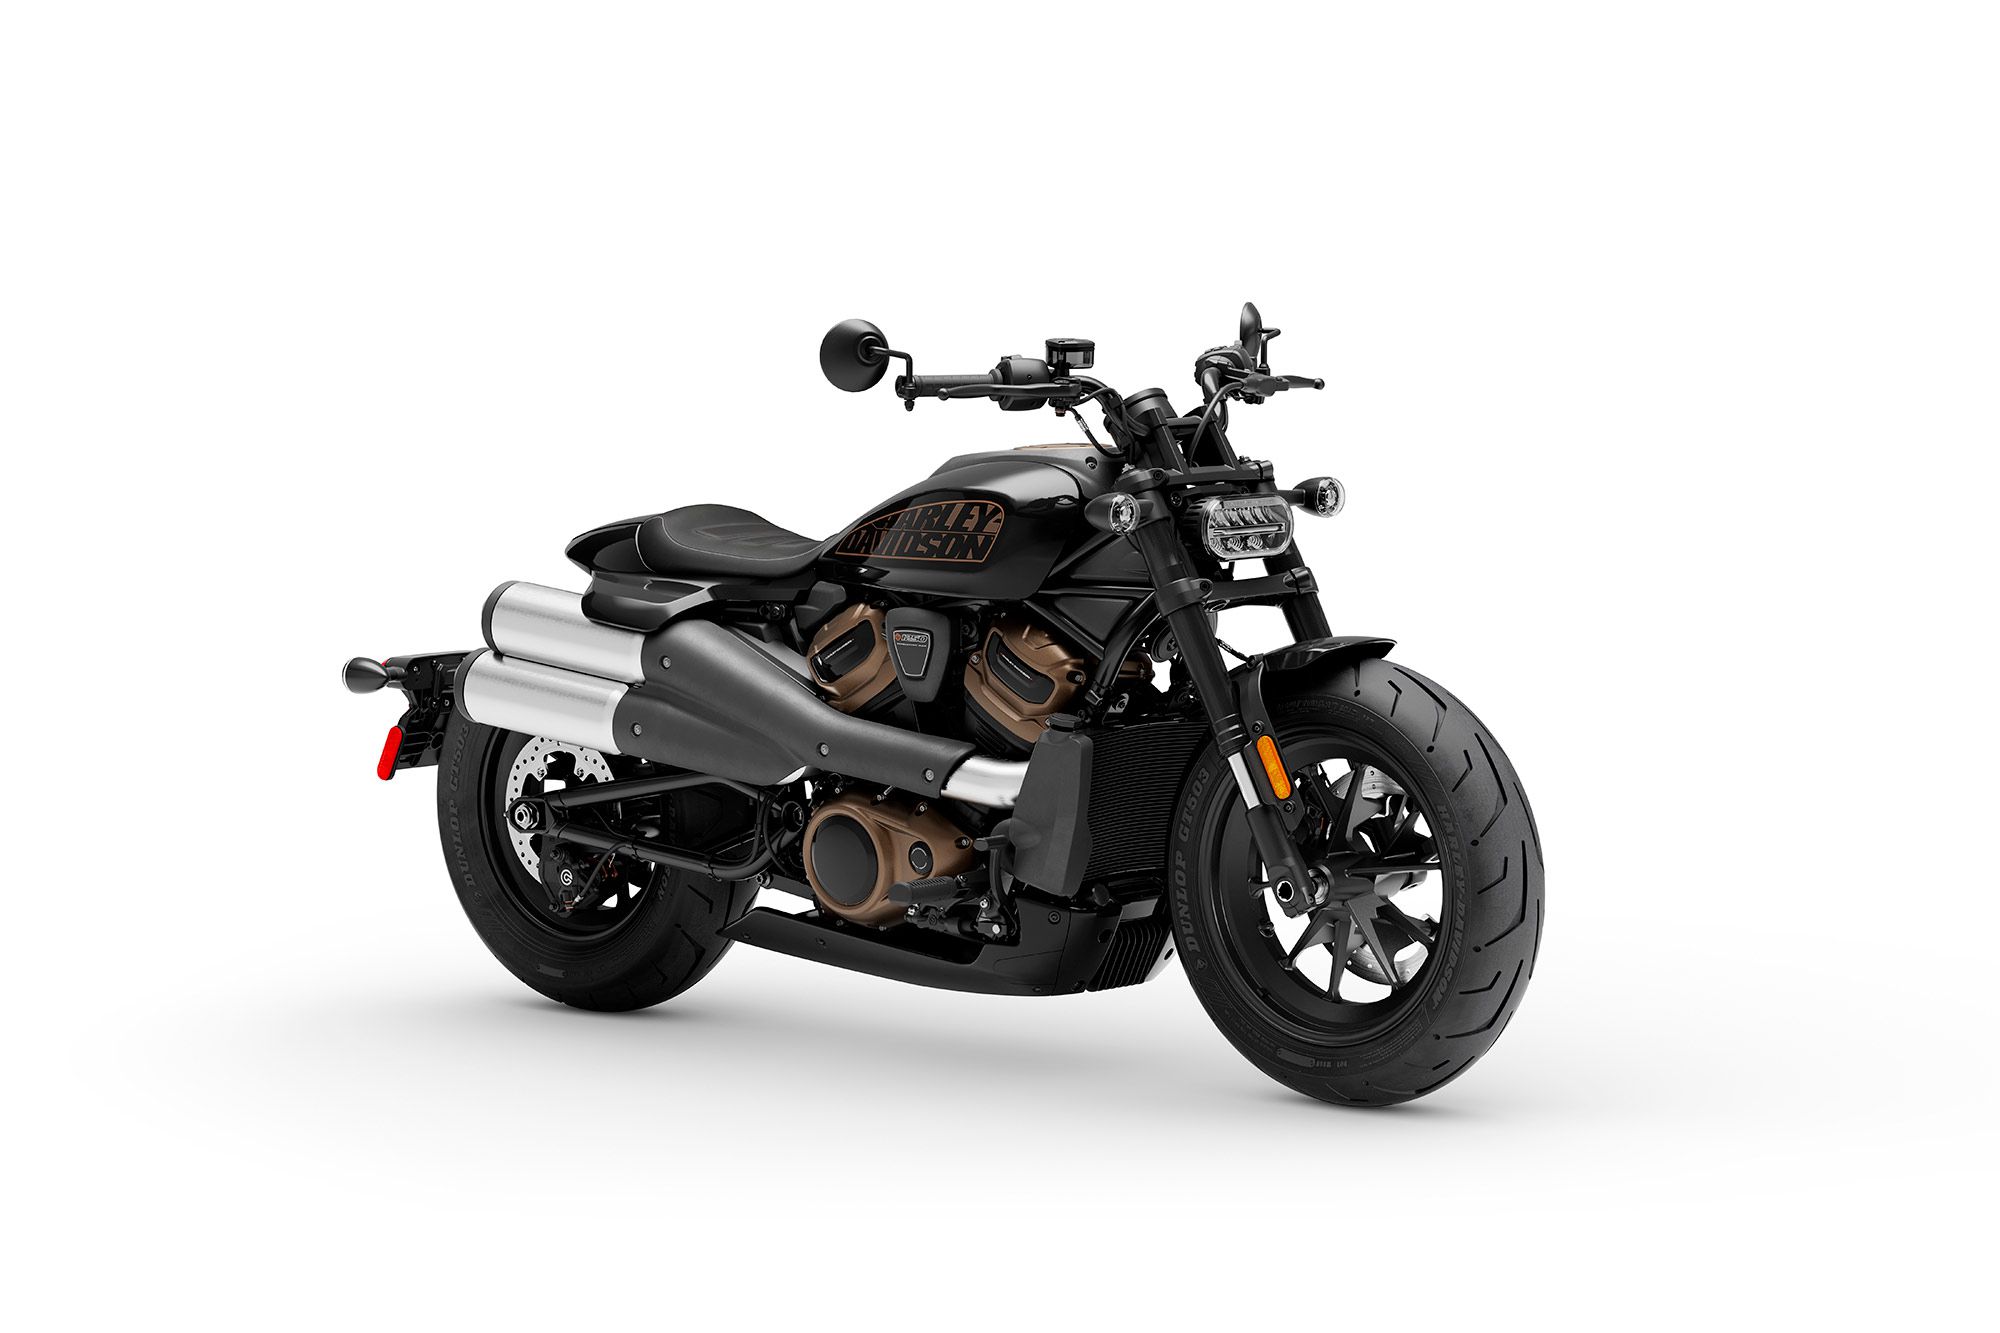 The 2021 Harley-Davidson Sportster S in Vivid Black.